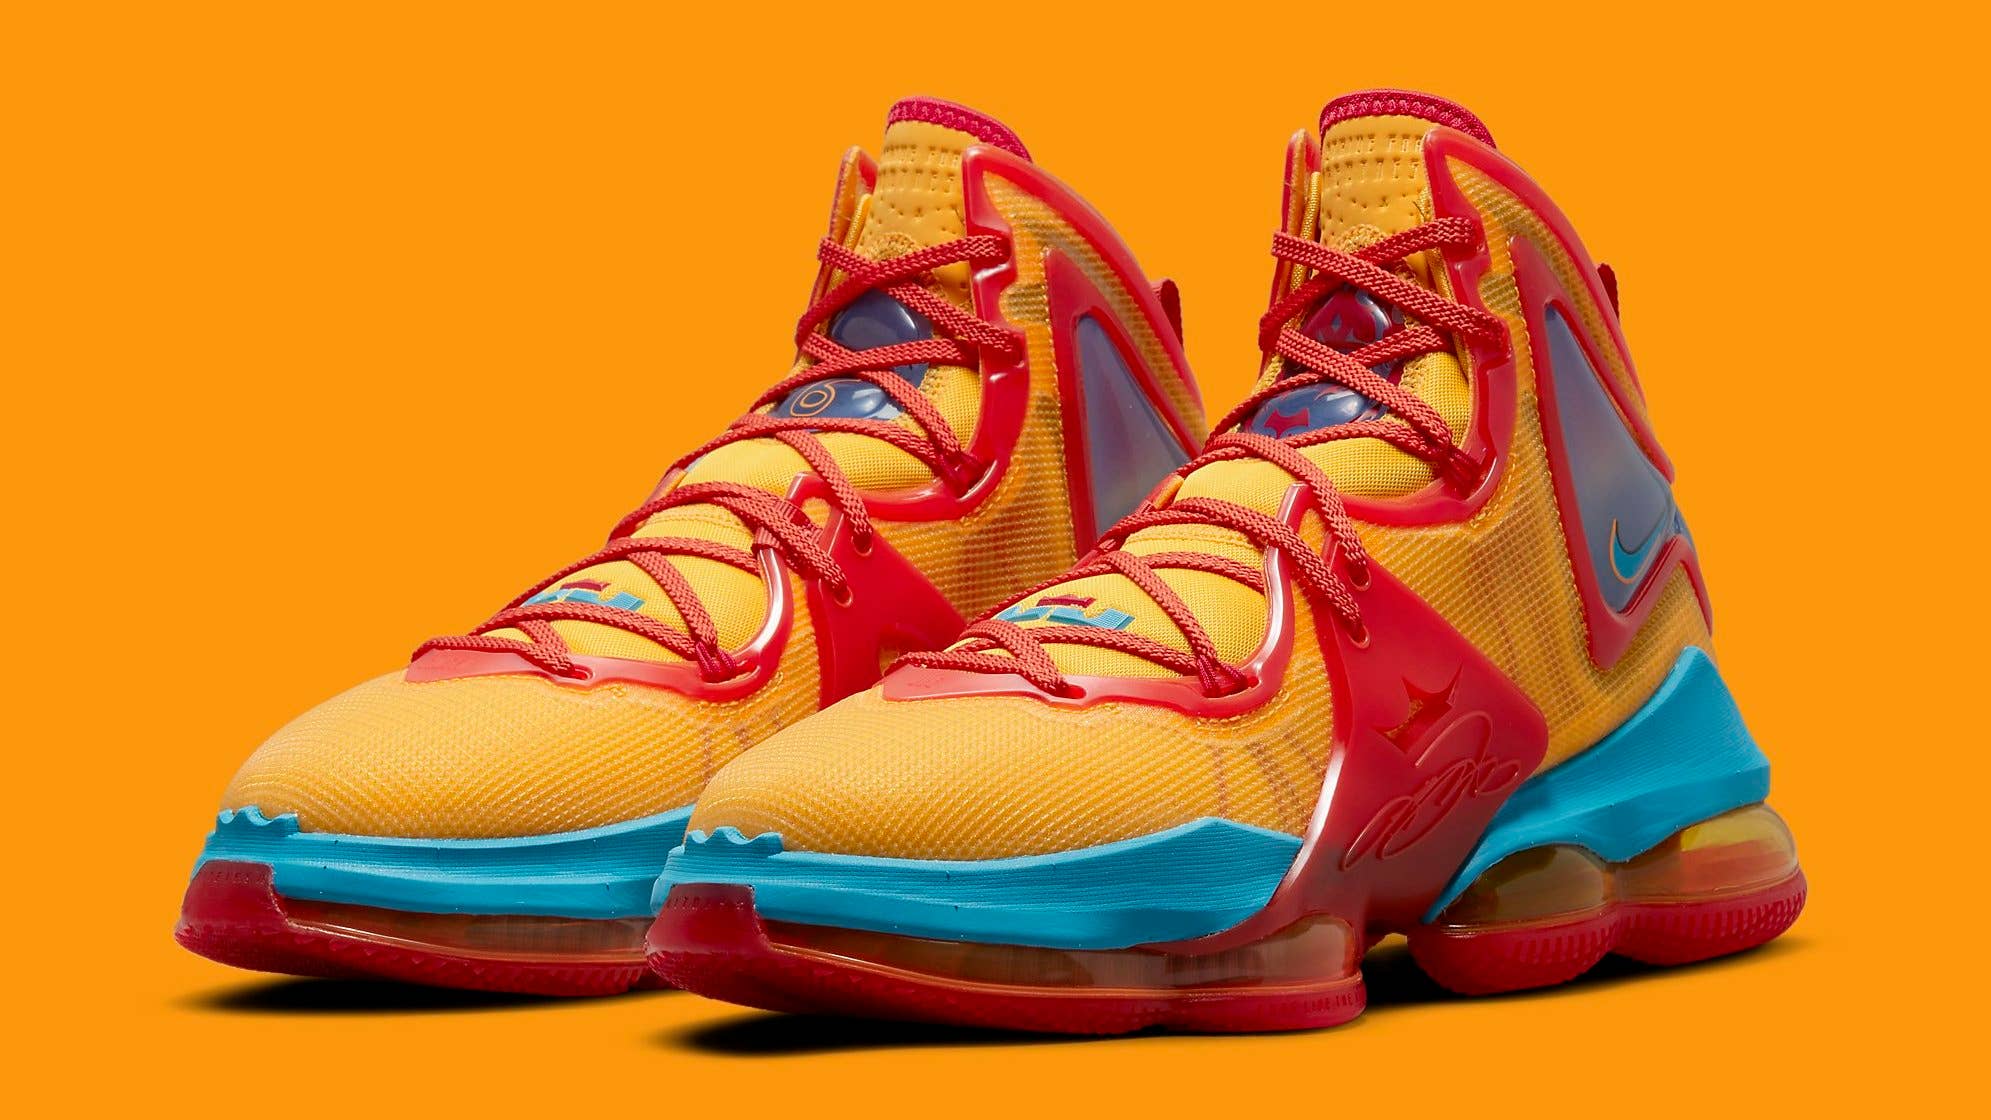 LeBron James Sneakers, Nike LeBron Basketball Shoes